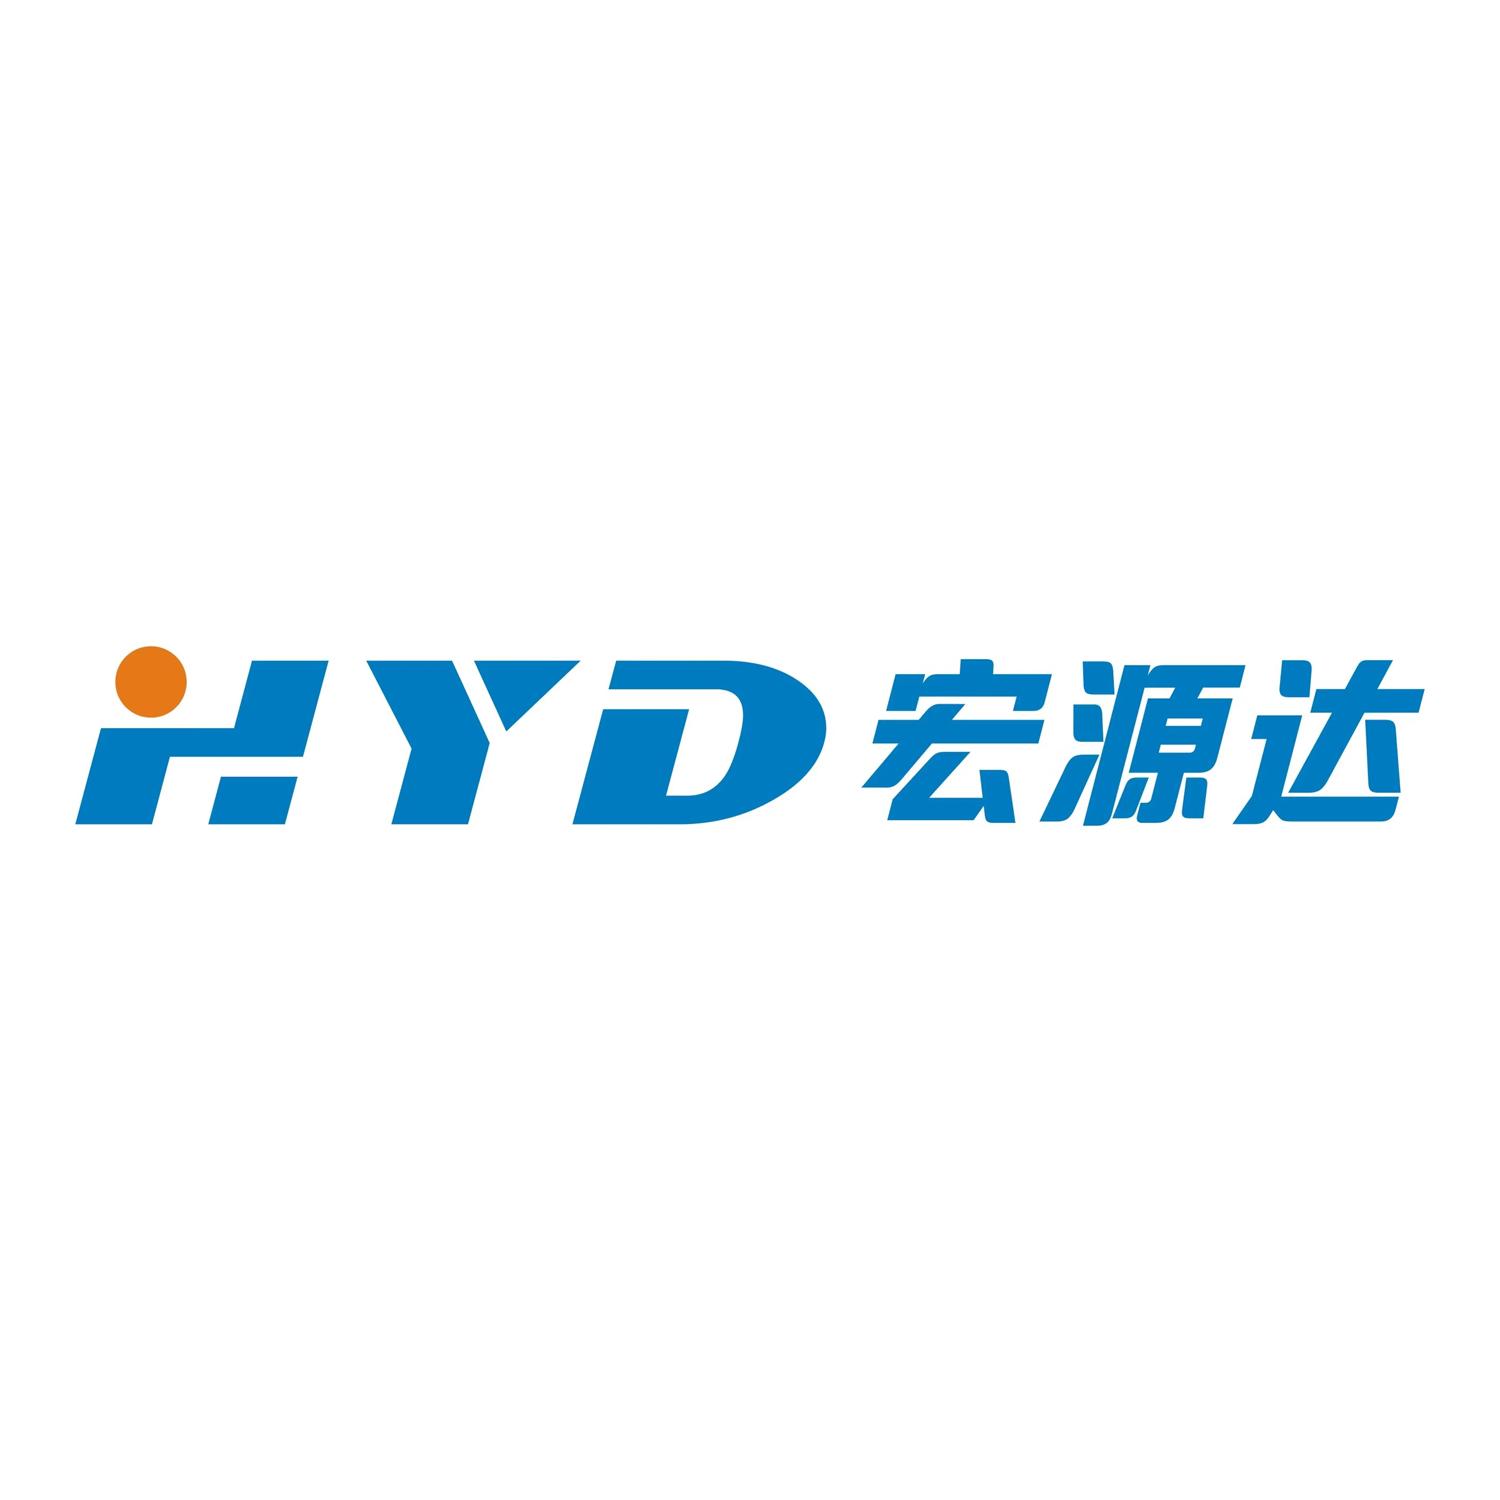 HYD 宏源达logo